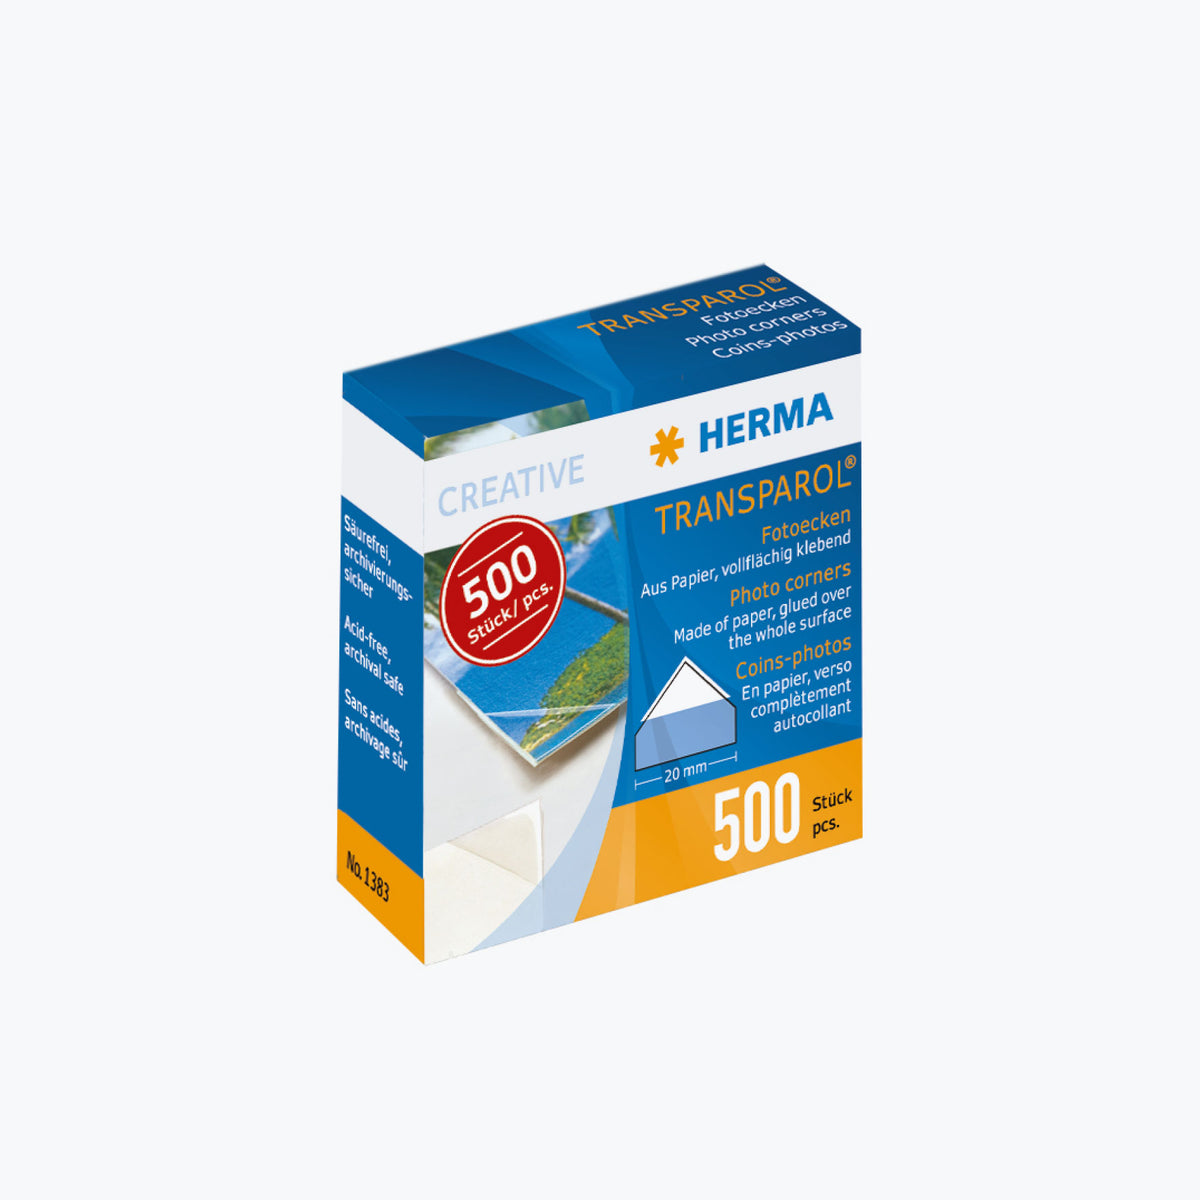 Herma - Photo Corners - Pack of 500